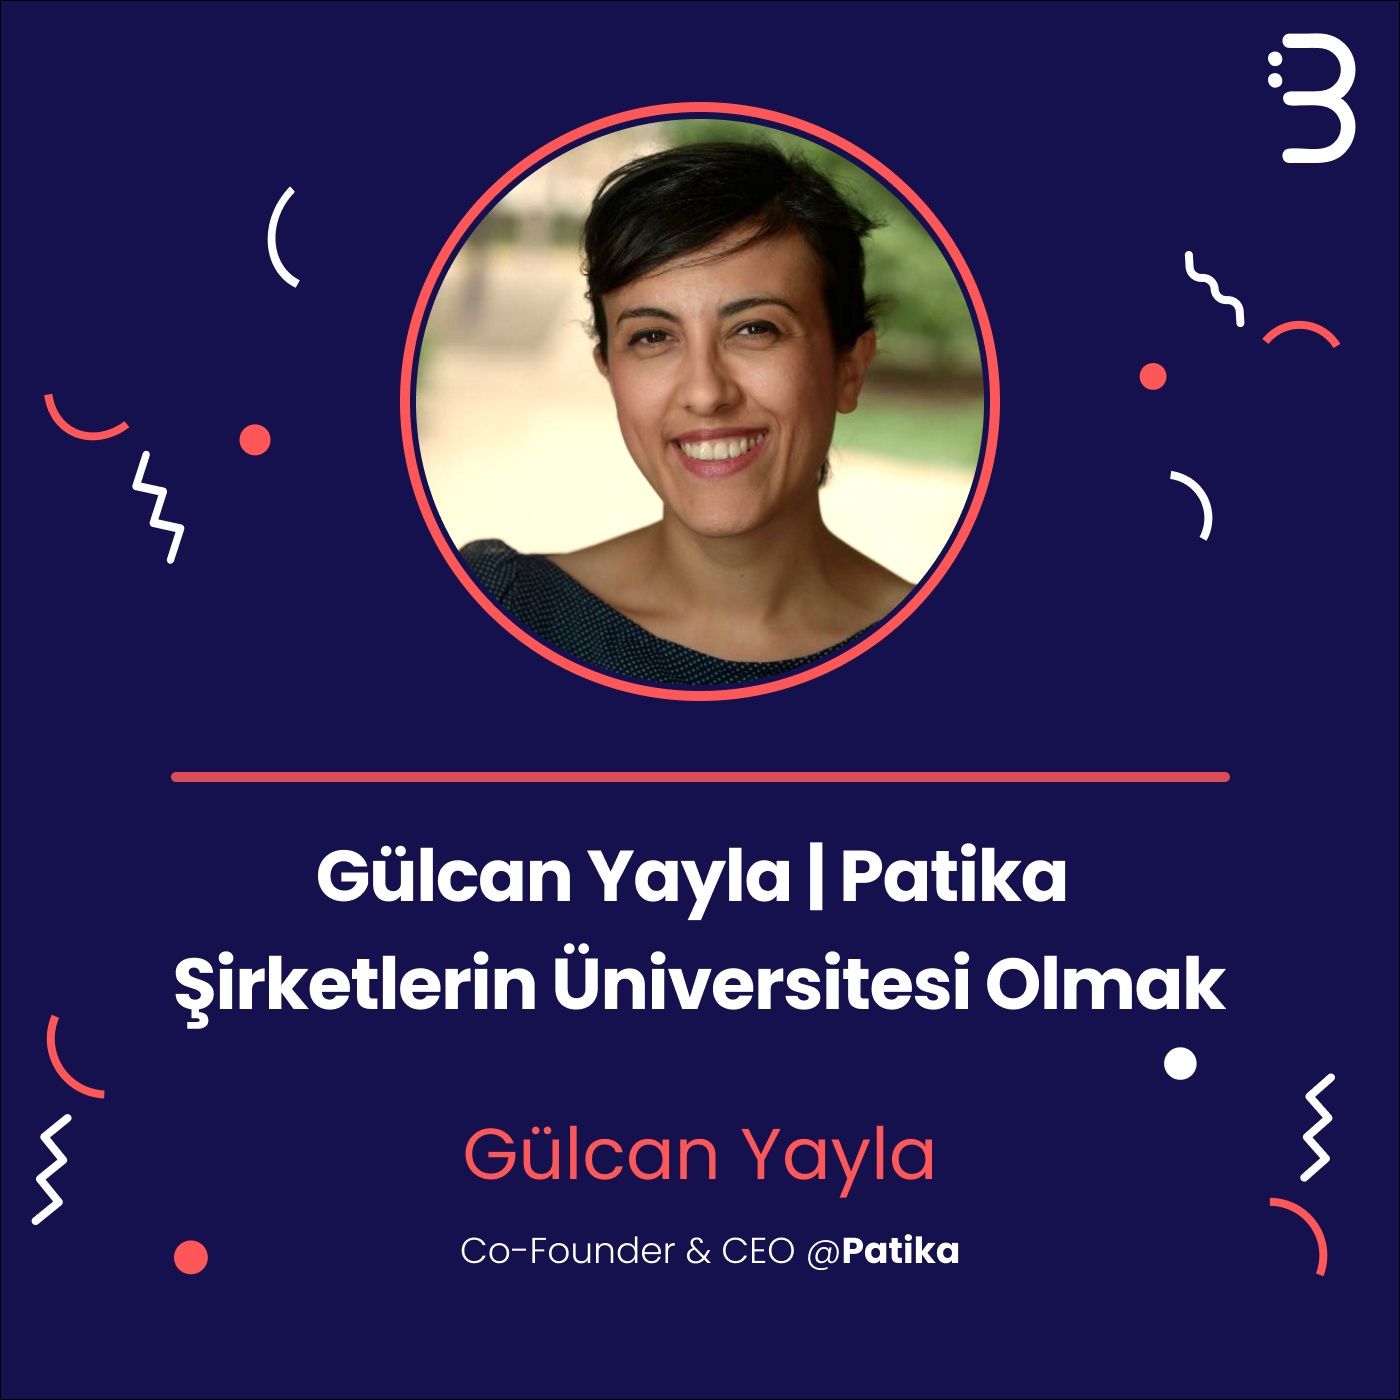 Gülcan Yayla | Patika - Şirketlerin Üniversitesi Olmak